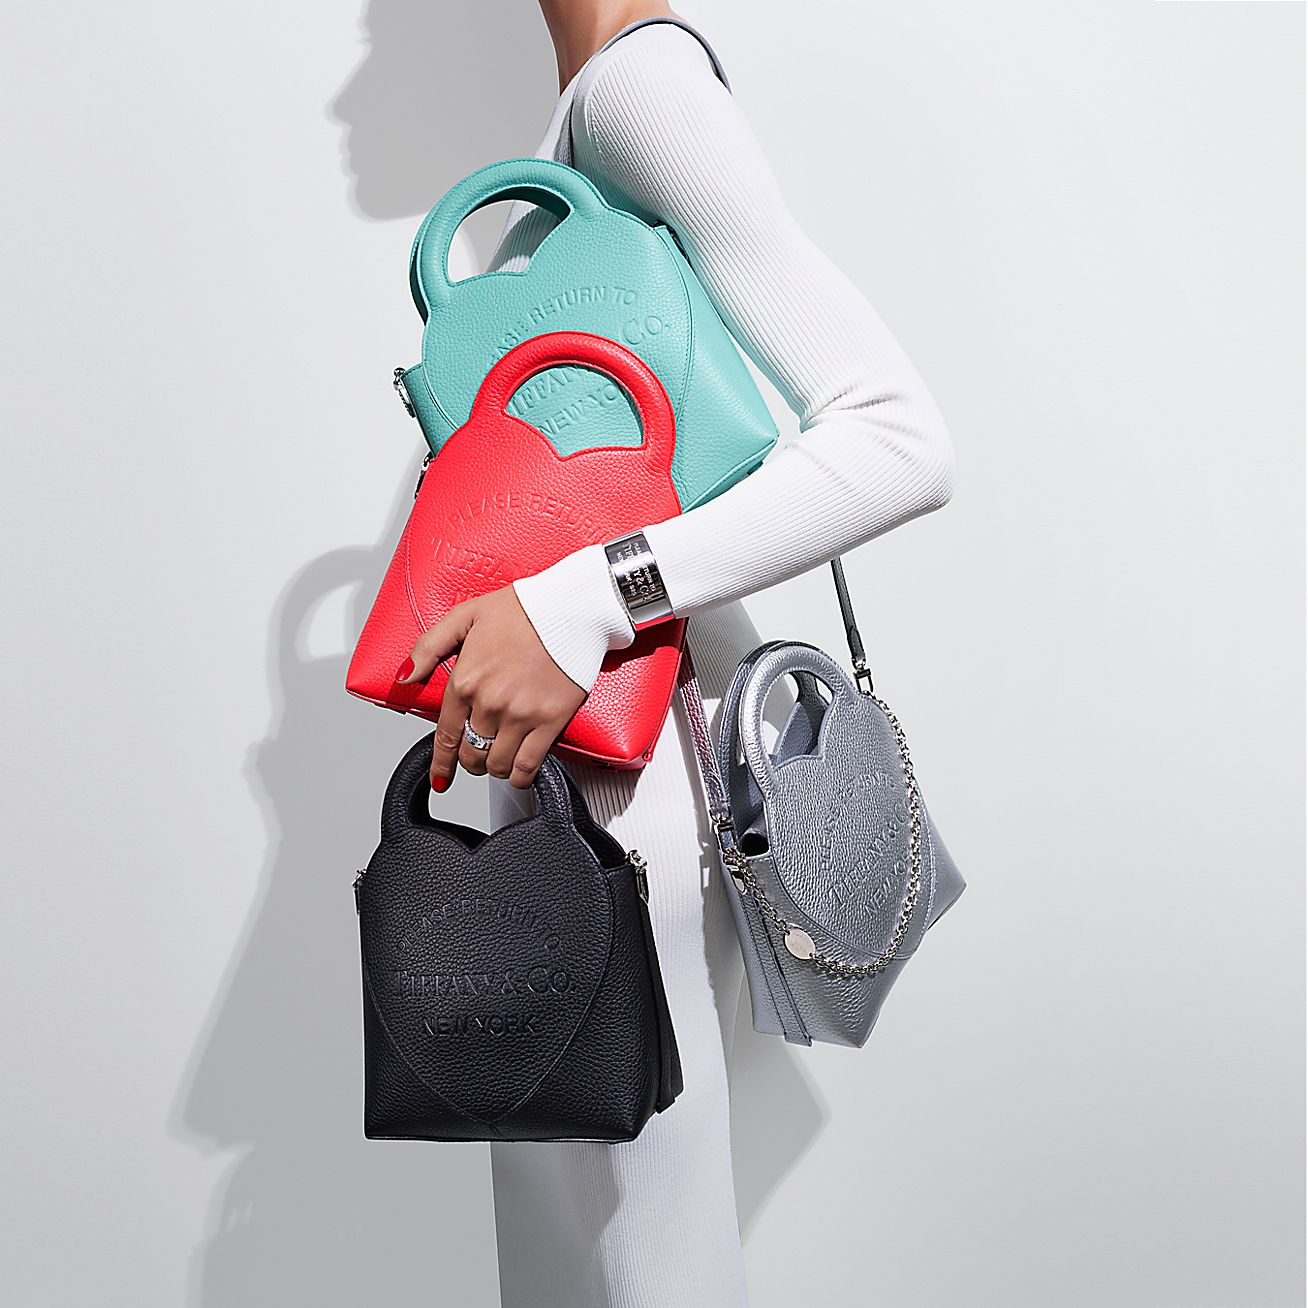 Return to Tiffany® Mini Crossbody Bag